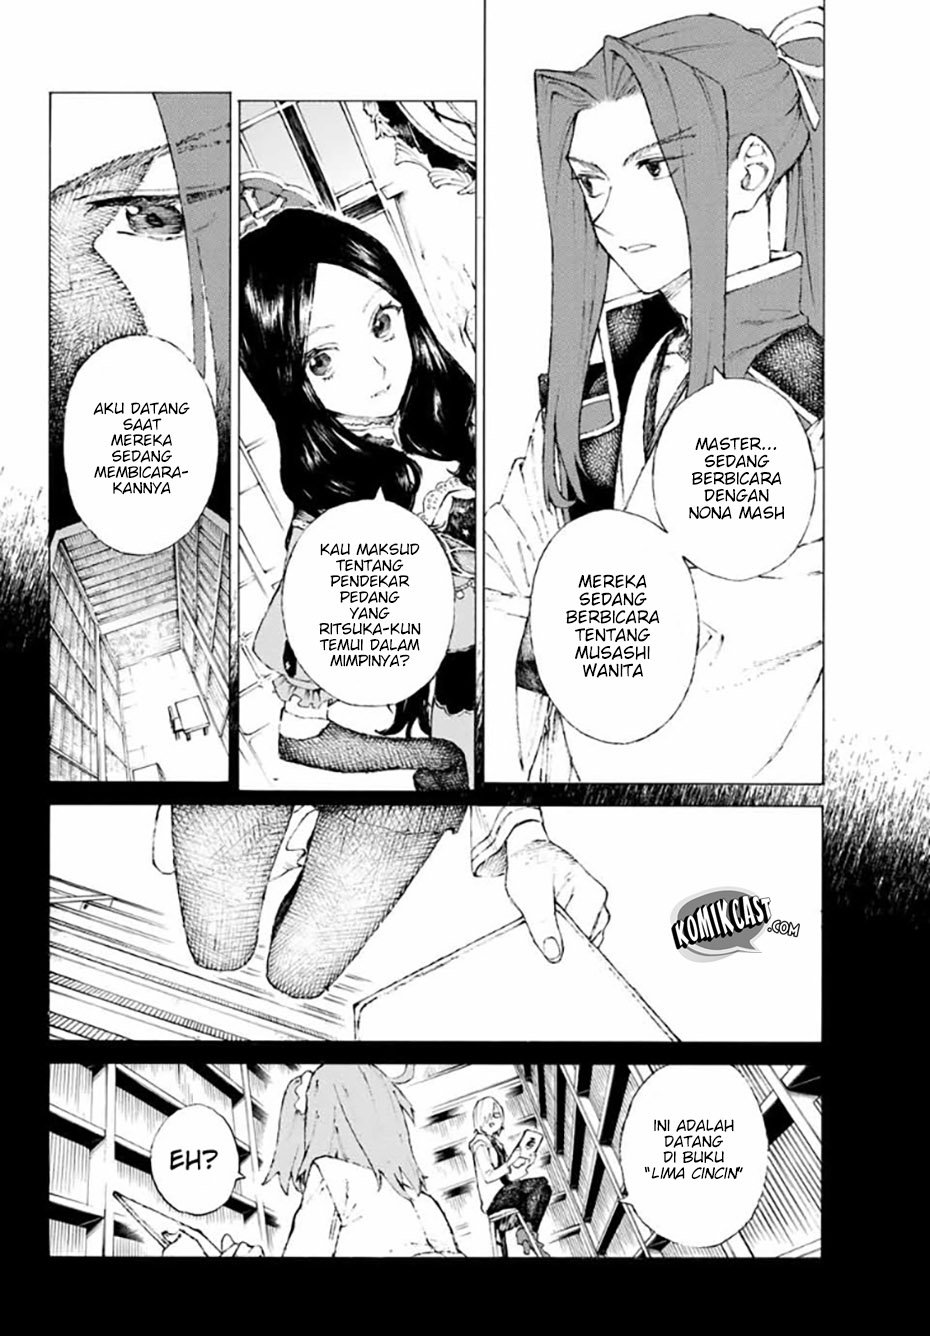 Baca Fate/Grand Order: -Epic of Remnant- Eirei Kengou Nanaban Shoubu Chapter 2  - GudangKomik